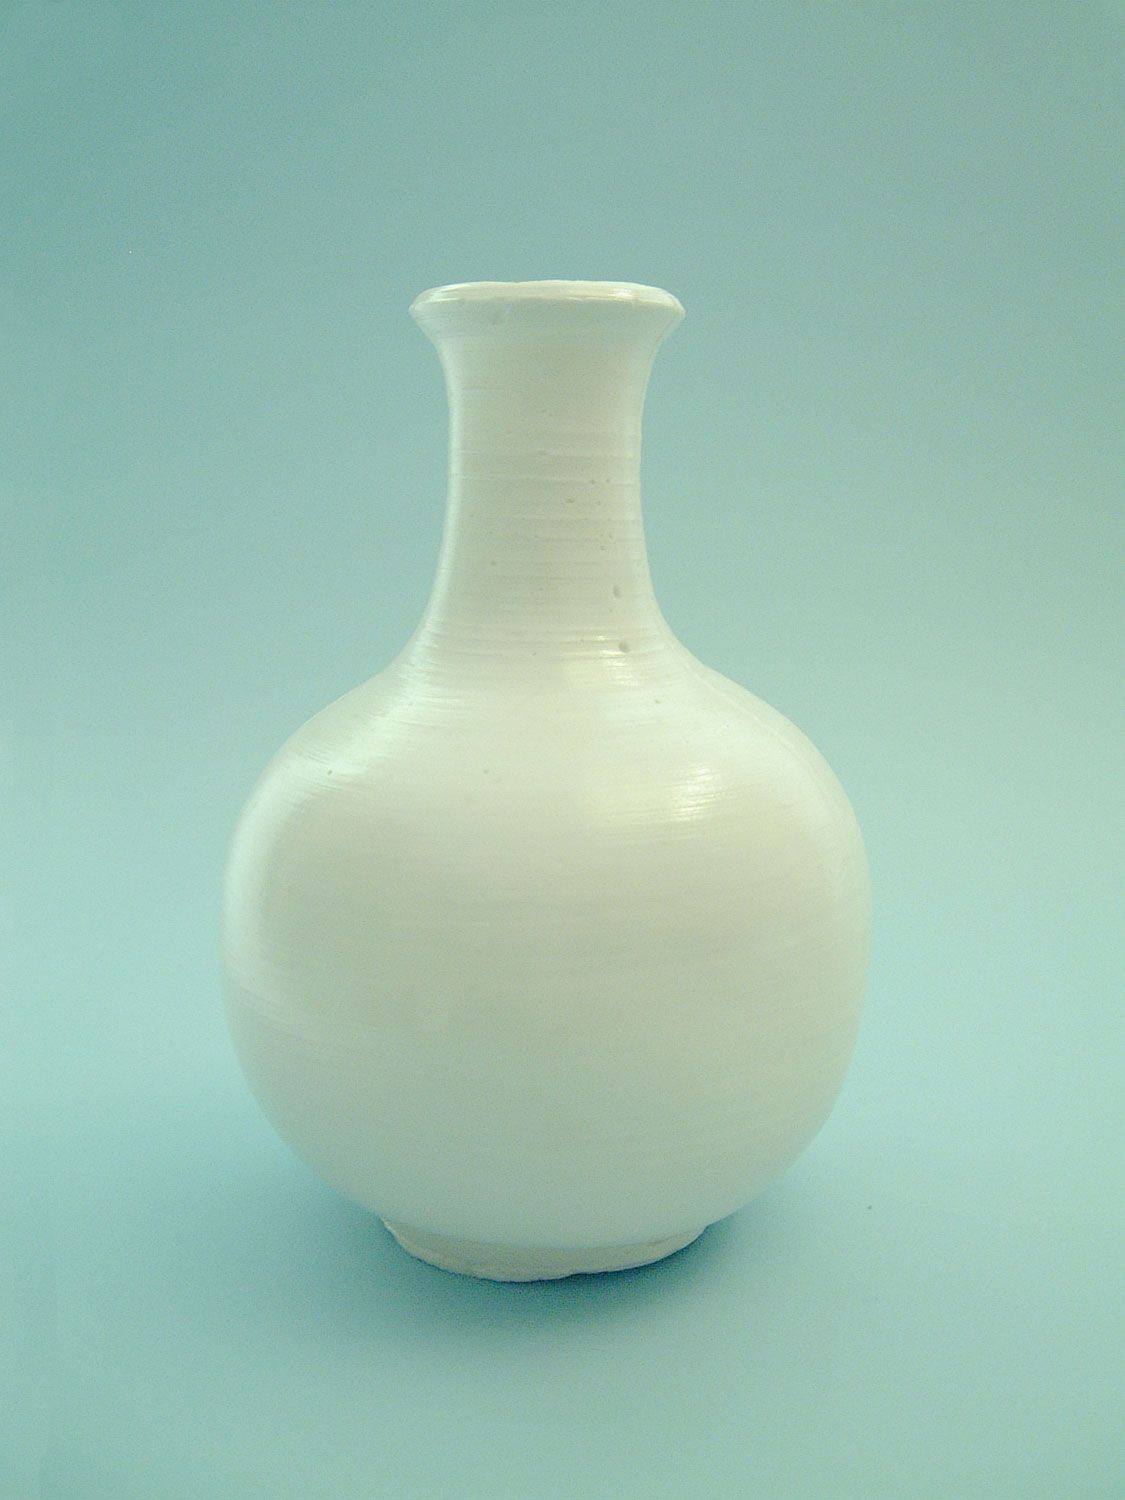 Medium-sized model white sugar glass vase.